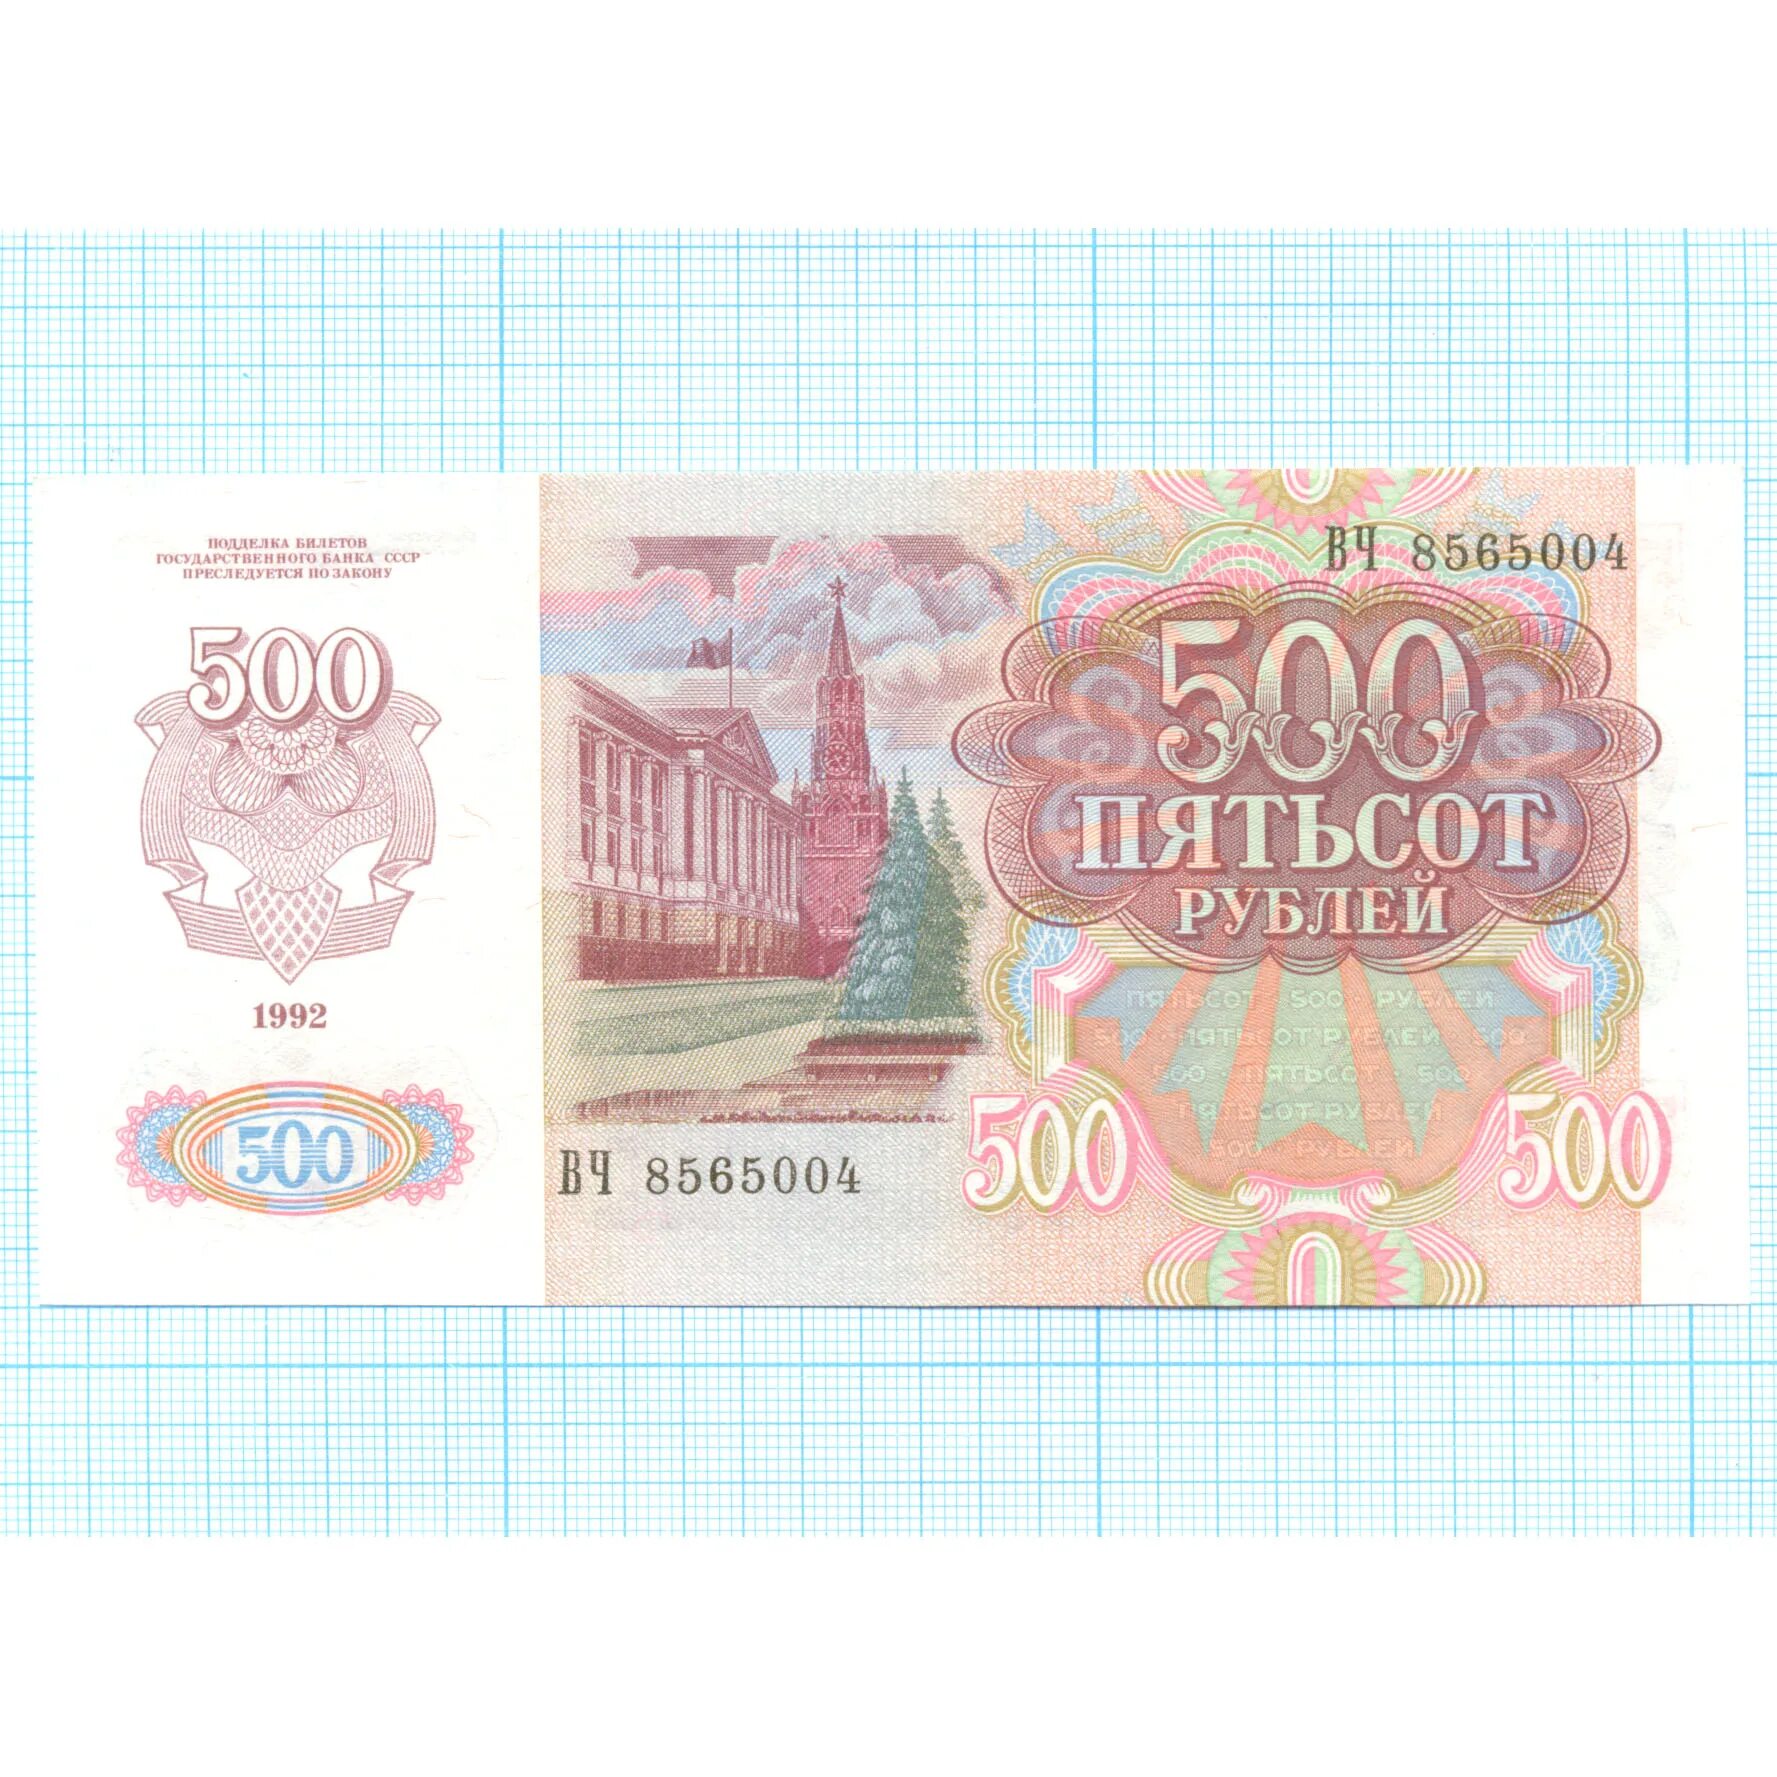 500 рублей 1992. 500 Рублей 1992 года. 500 Рублей СССР 1992. 500 Рублей 1992 года много штук. Пятьсот рублей 1992 года фото.